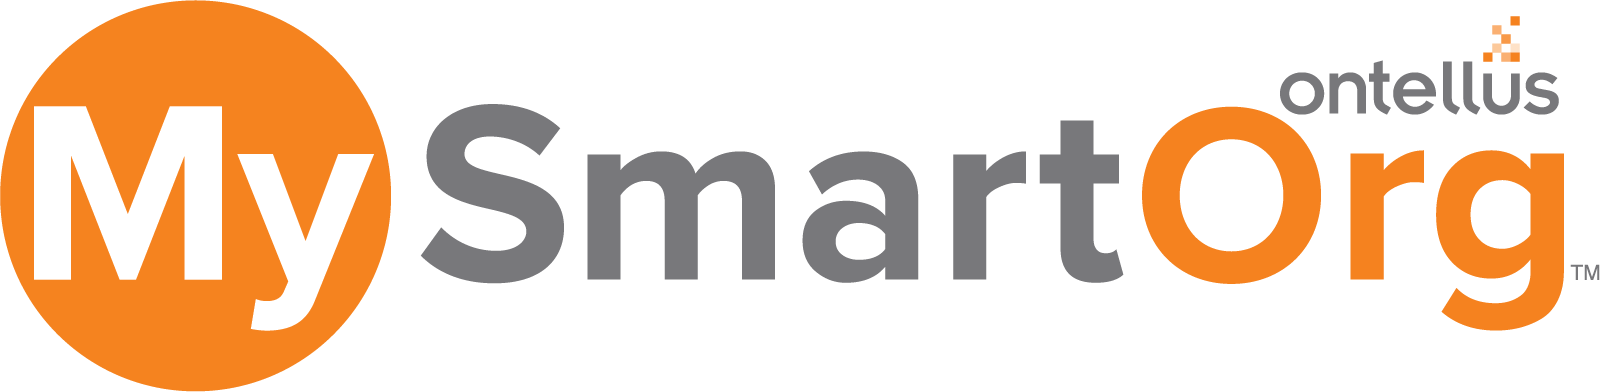 MYSmartOrg-Logo-CMYK